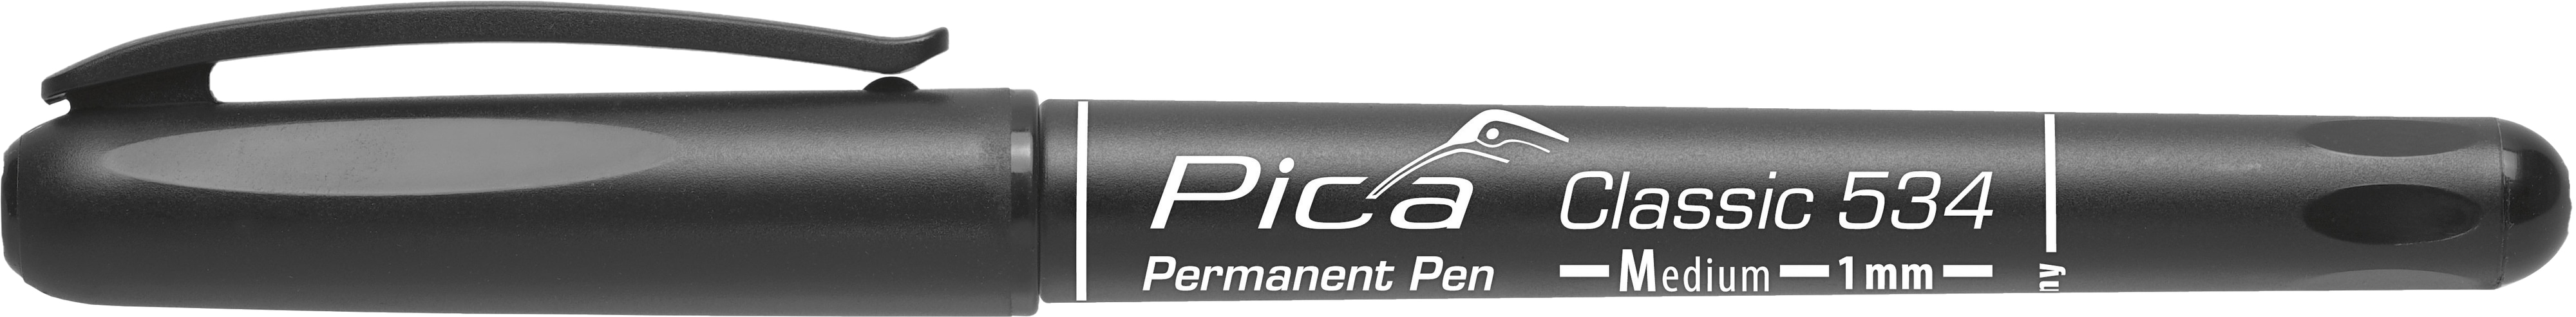 PICA Classic Permanent Pen, 534/46/SB, Medium, schwarz